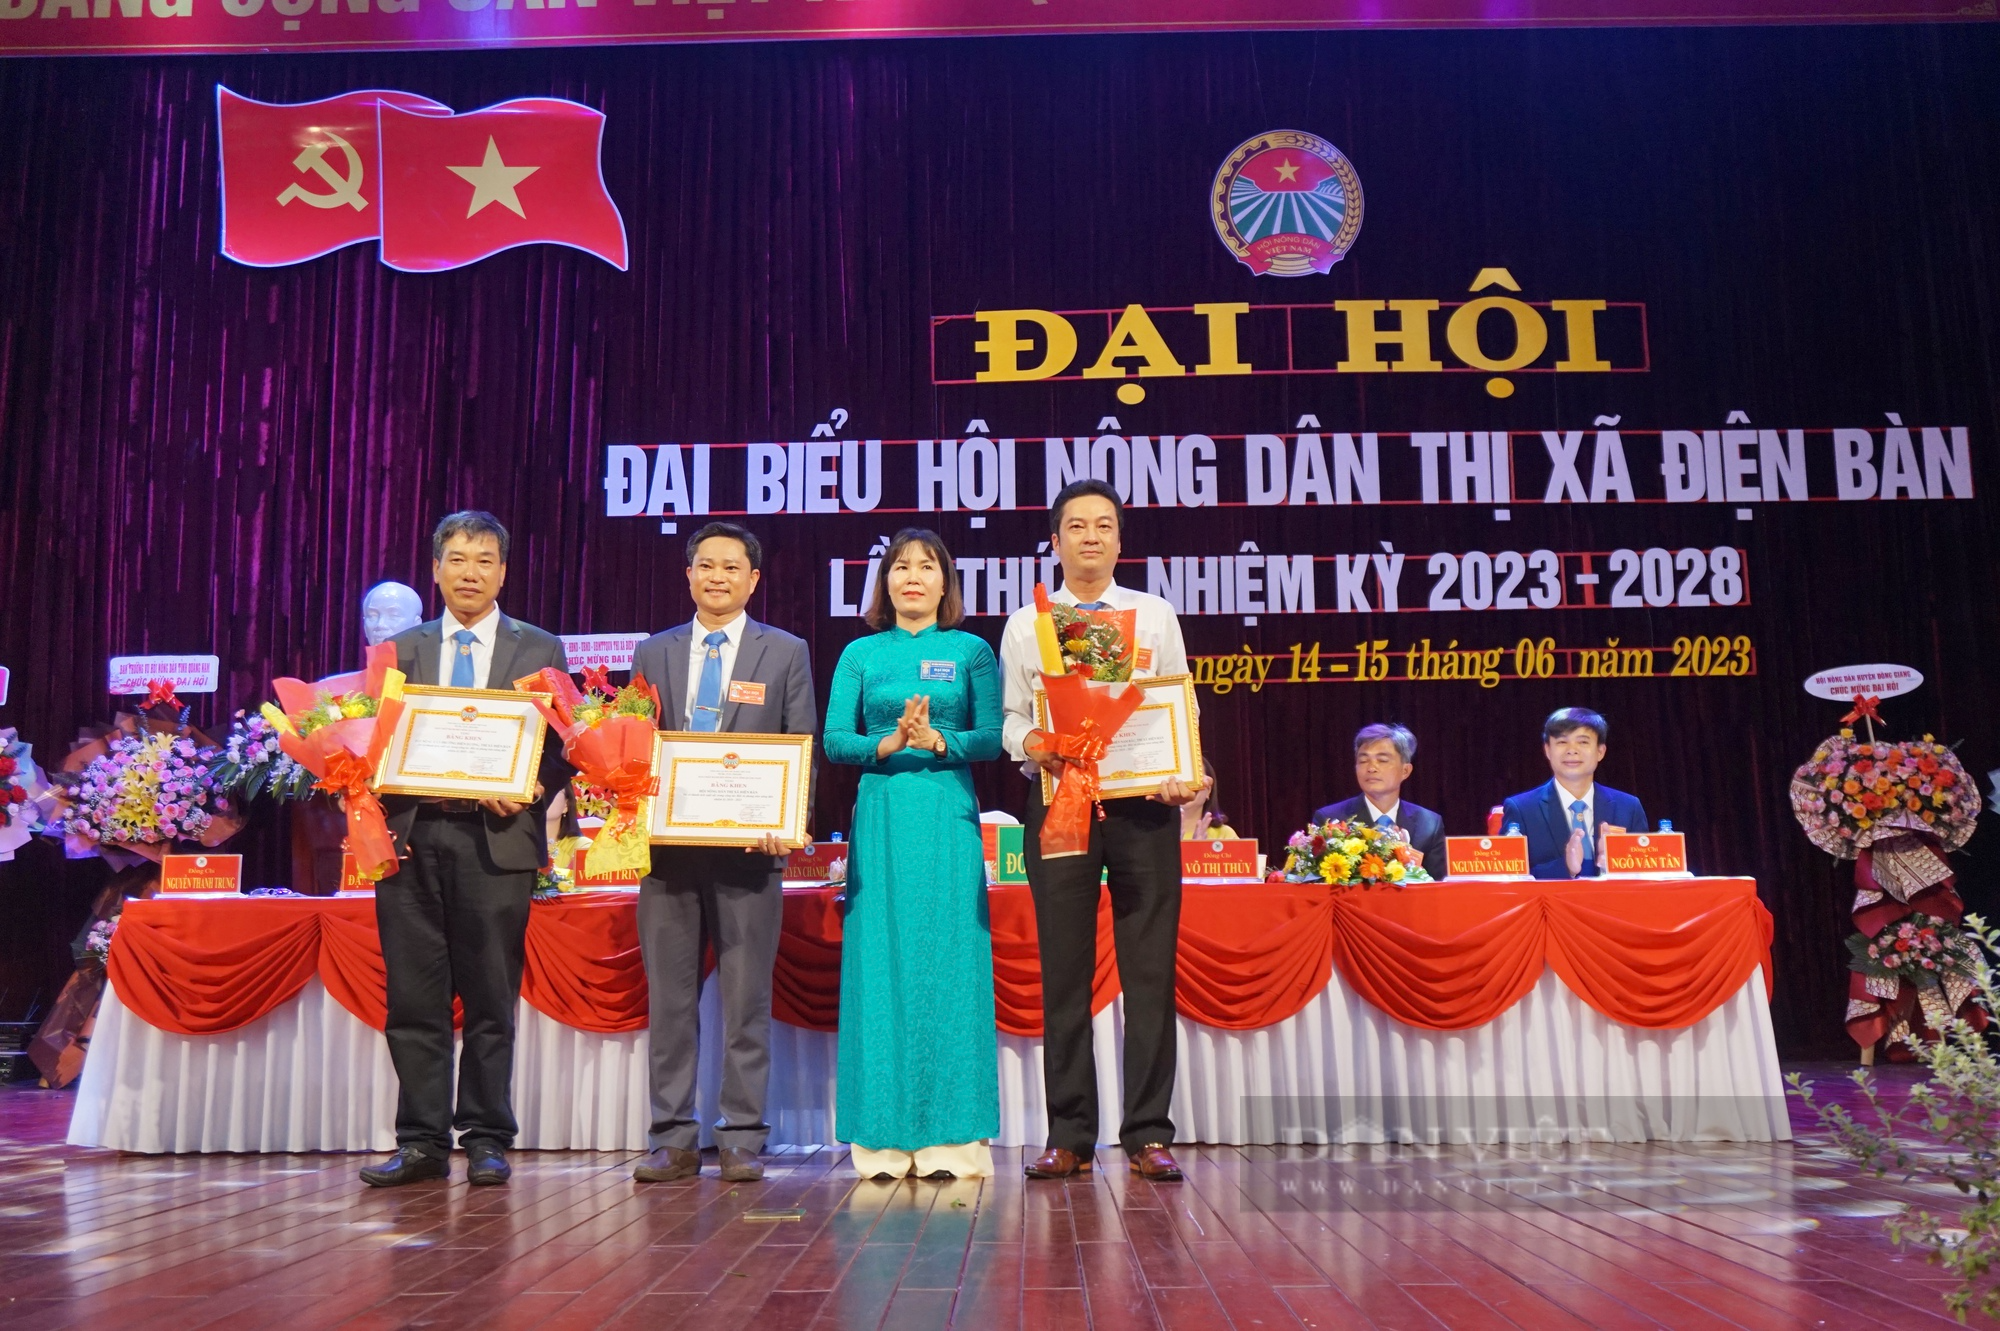 Quảng Nam: Đại hội Hội Nông dân thị xã Điện Bàn, ông Nguyễn Chánh Thiện tái đắc cử chức Chủ tịch - Ảnh 7.